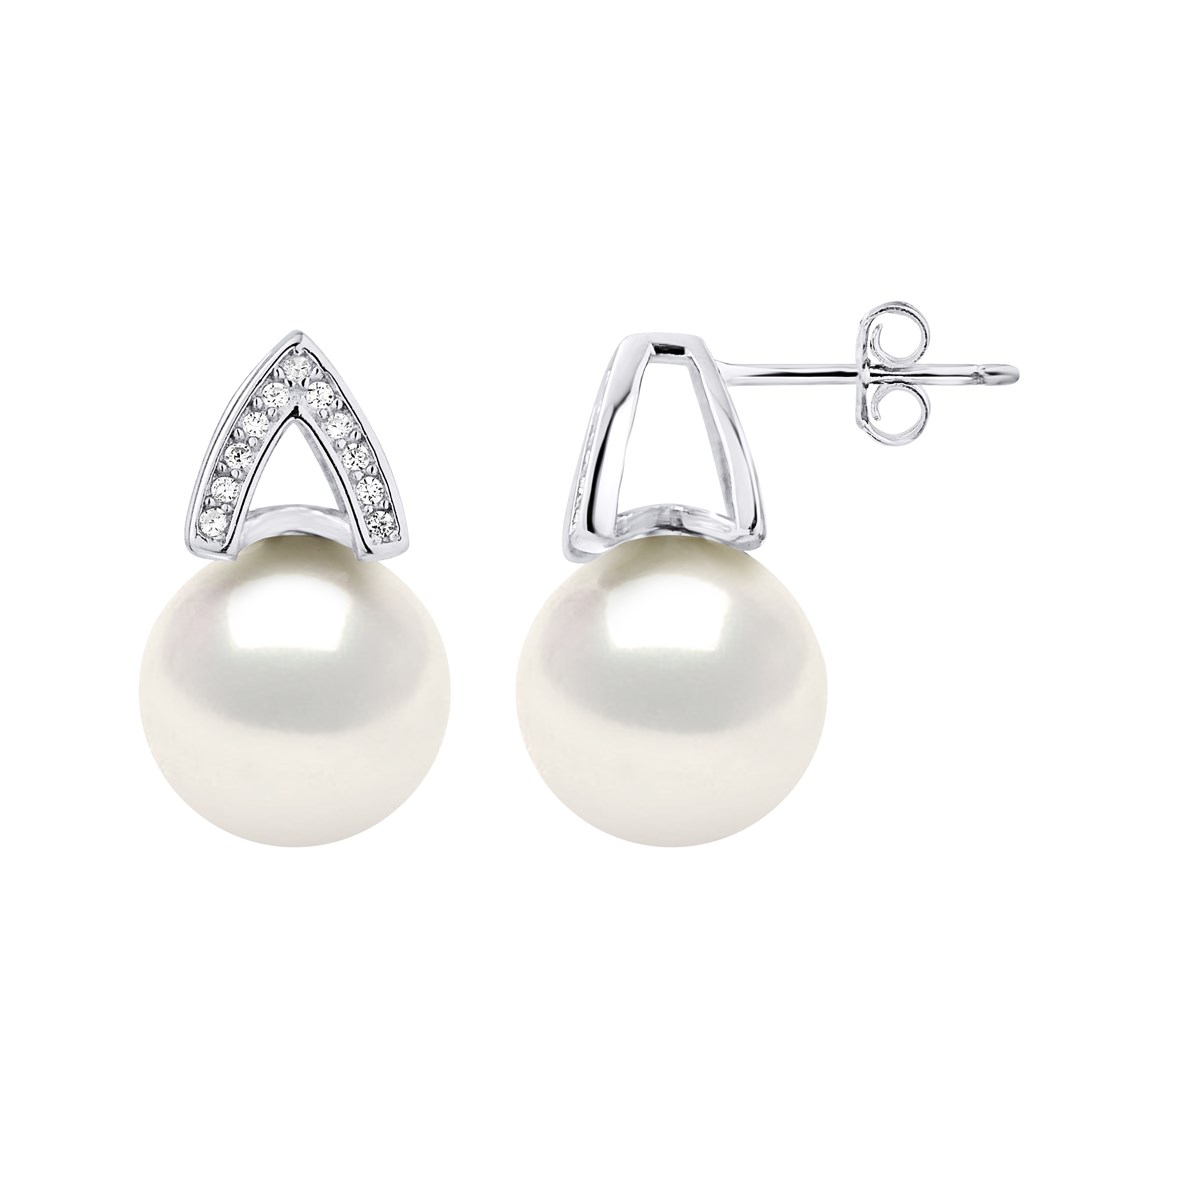 Boucles d'Oreilles en V - Perles blanches - Oxyde de zirconium - Argent 925